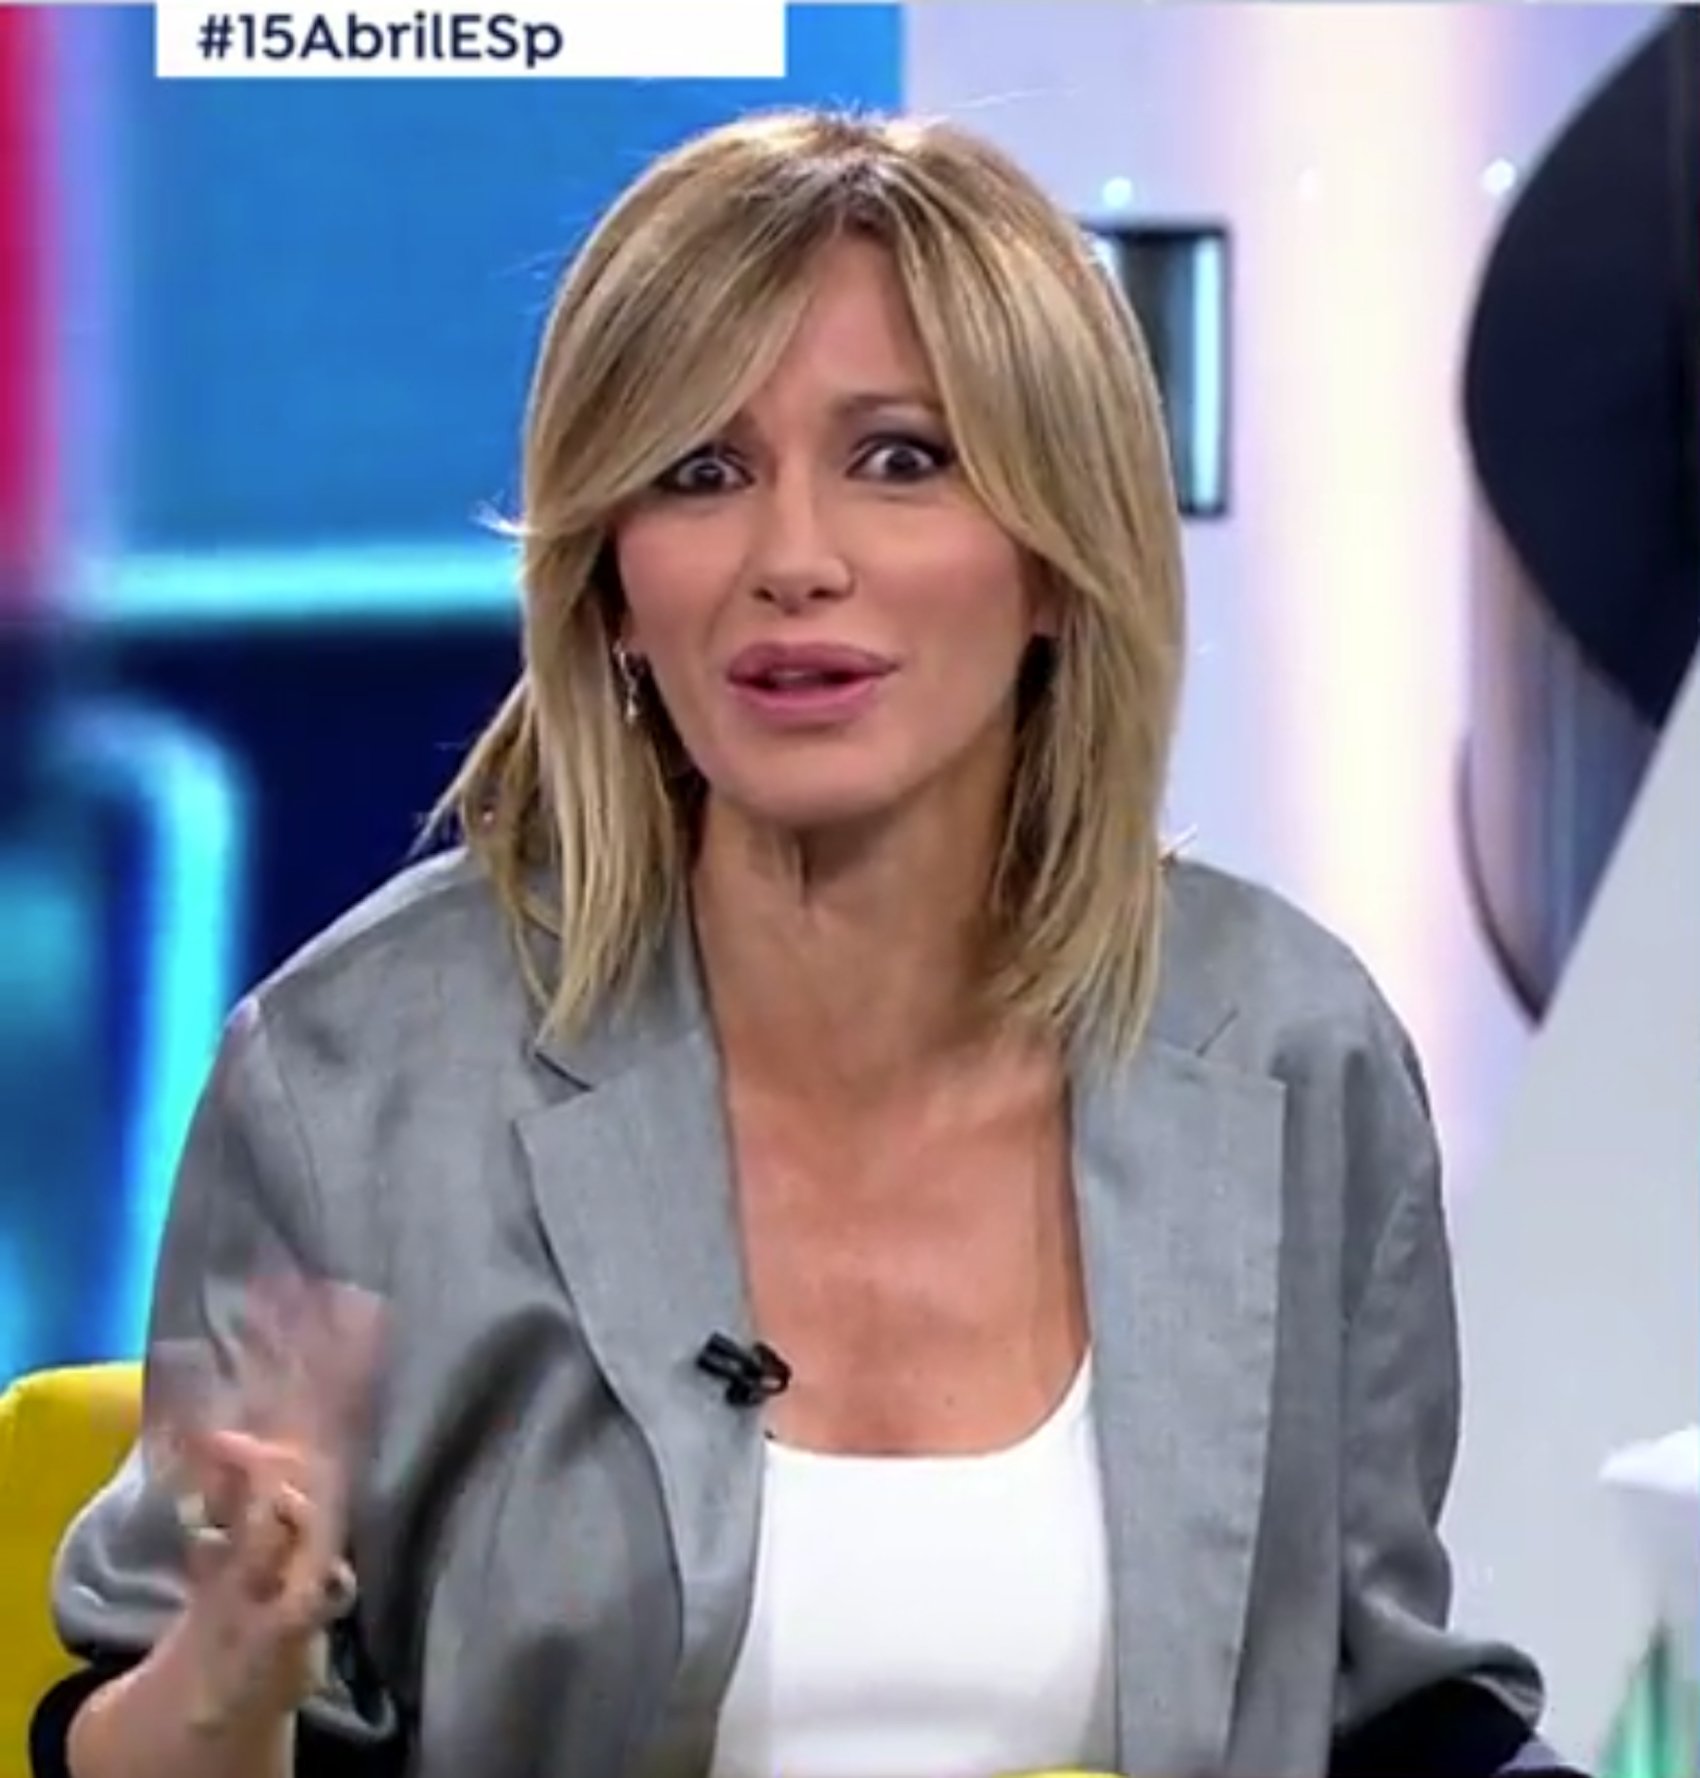 Fatxes embogits contra Susanna Griso per rebatre VOX: "retrasada, indepe"